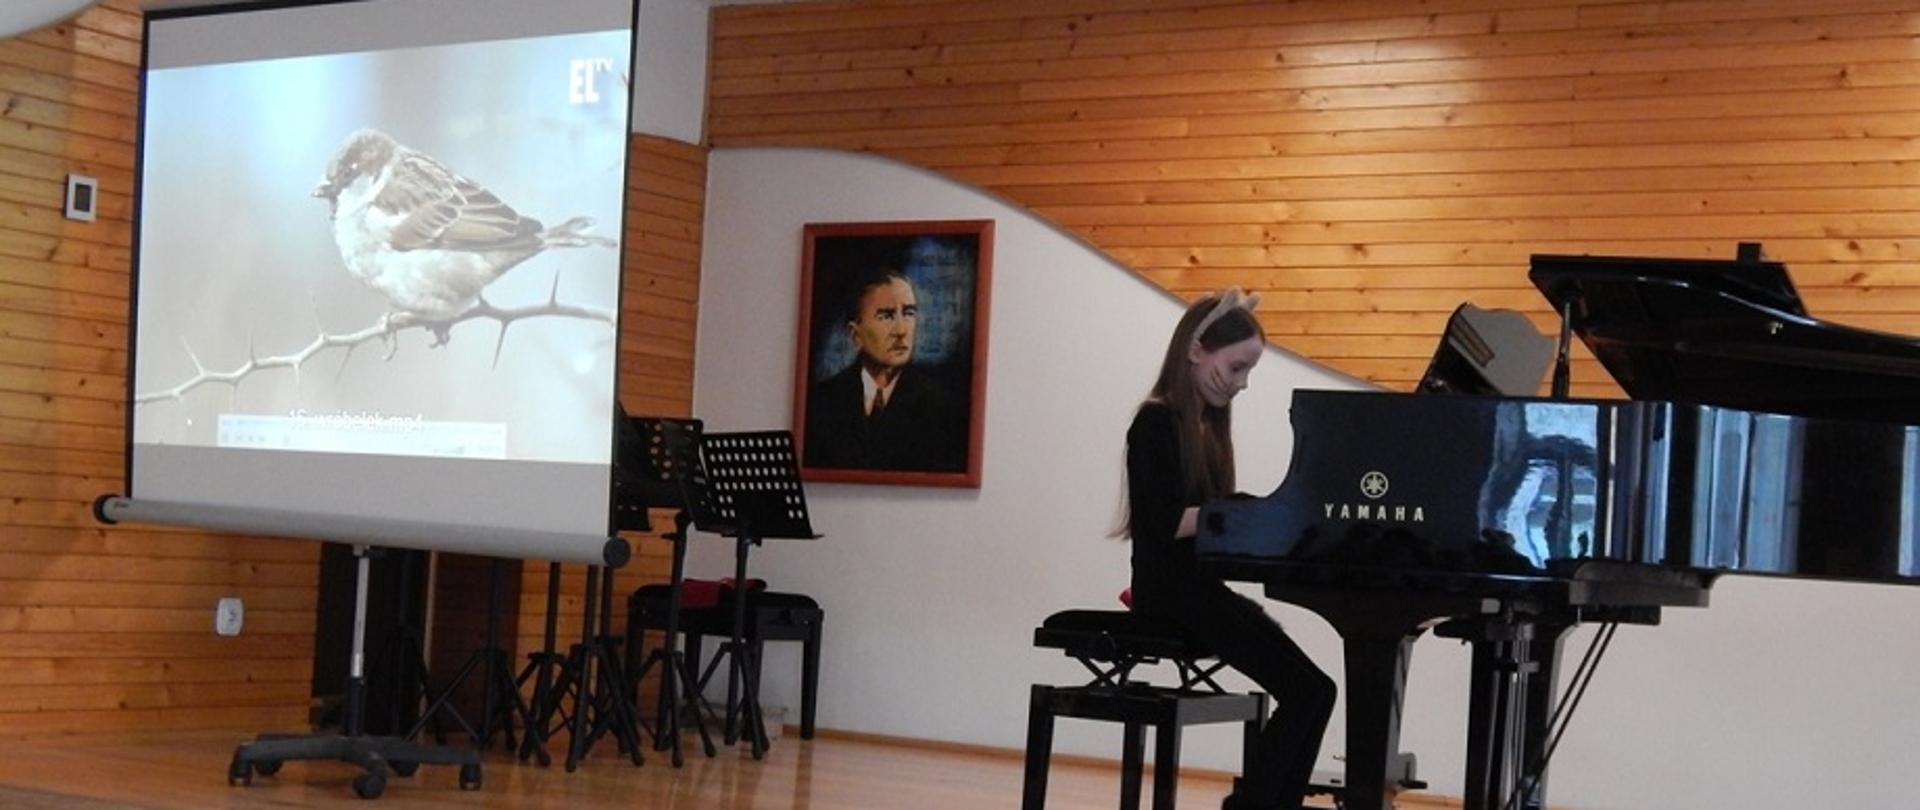 dziewczynka grająca na czarnym fortepianie, w tle ekran przedstawiający sylwetkę wróbla